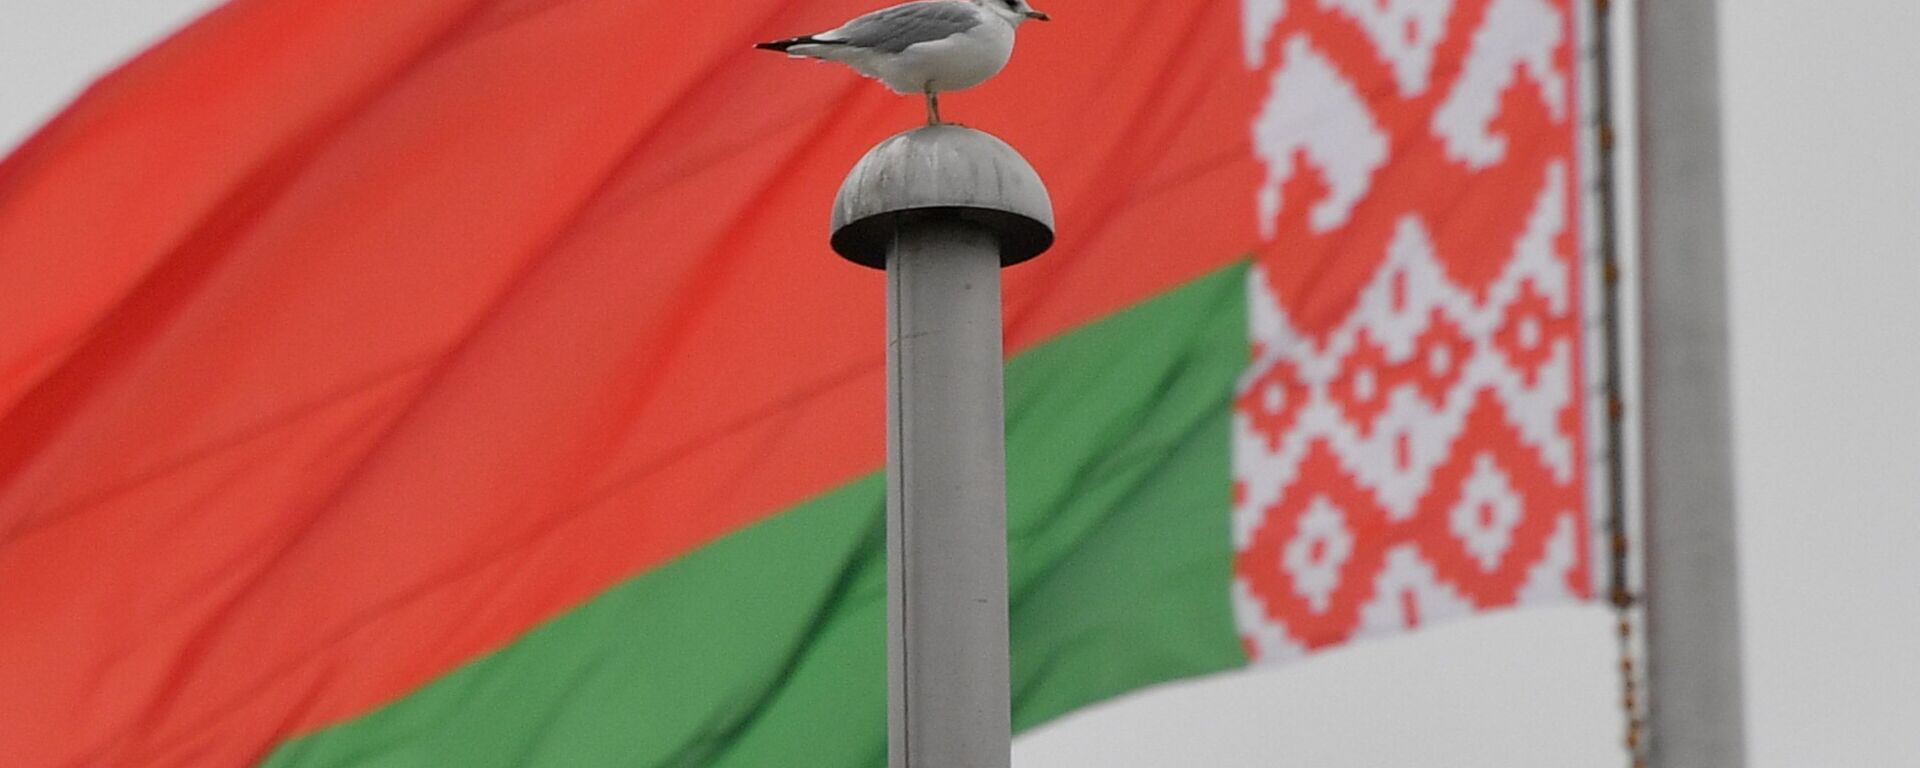 Флаг Беларуси, архивное фото - Sputnik Узбекистан, 1920, 21.10.2021